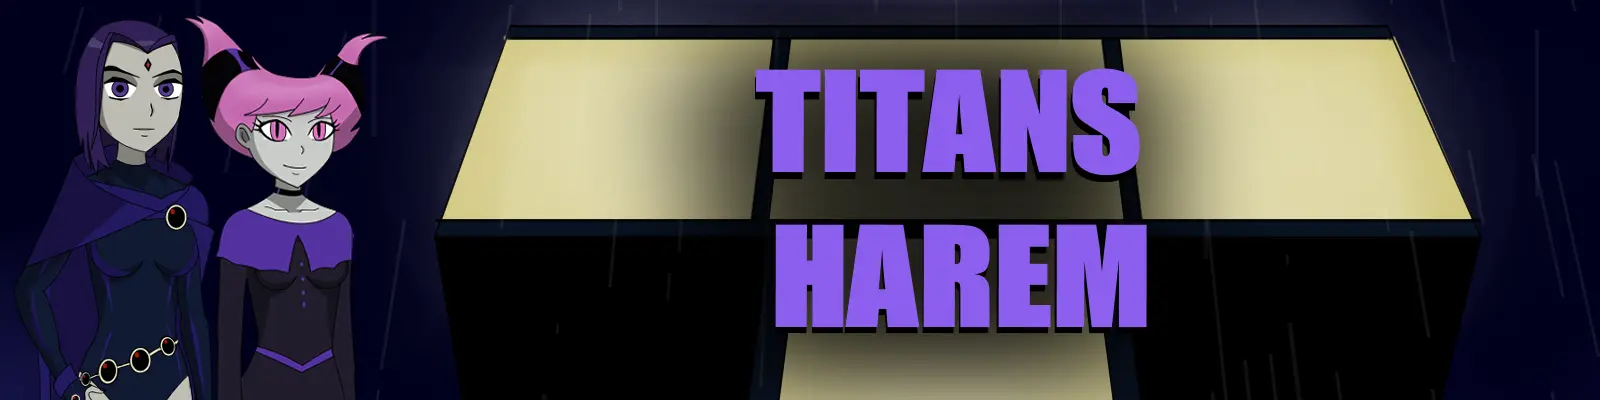 Titans Harem main image